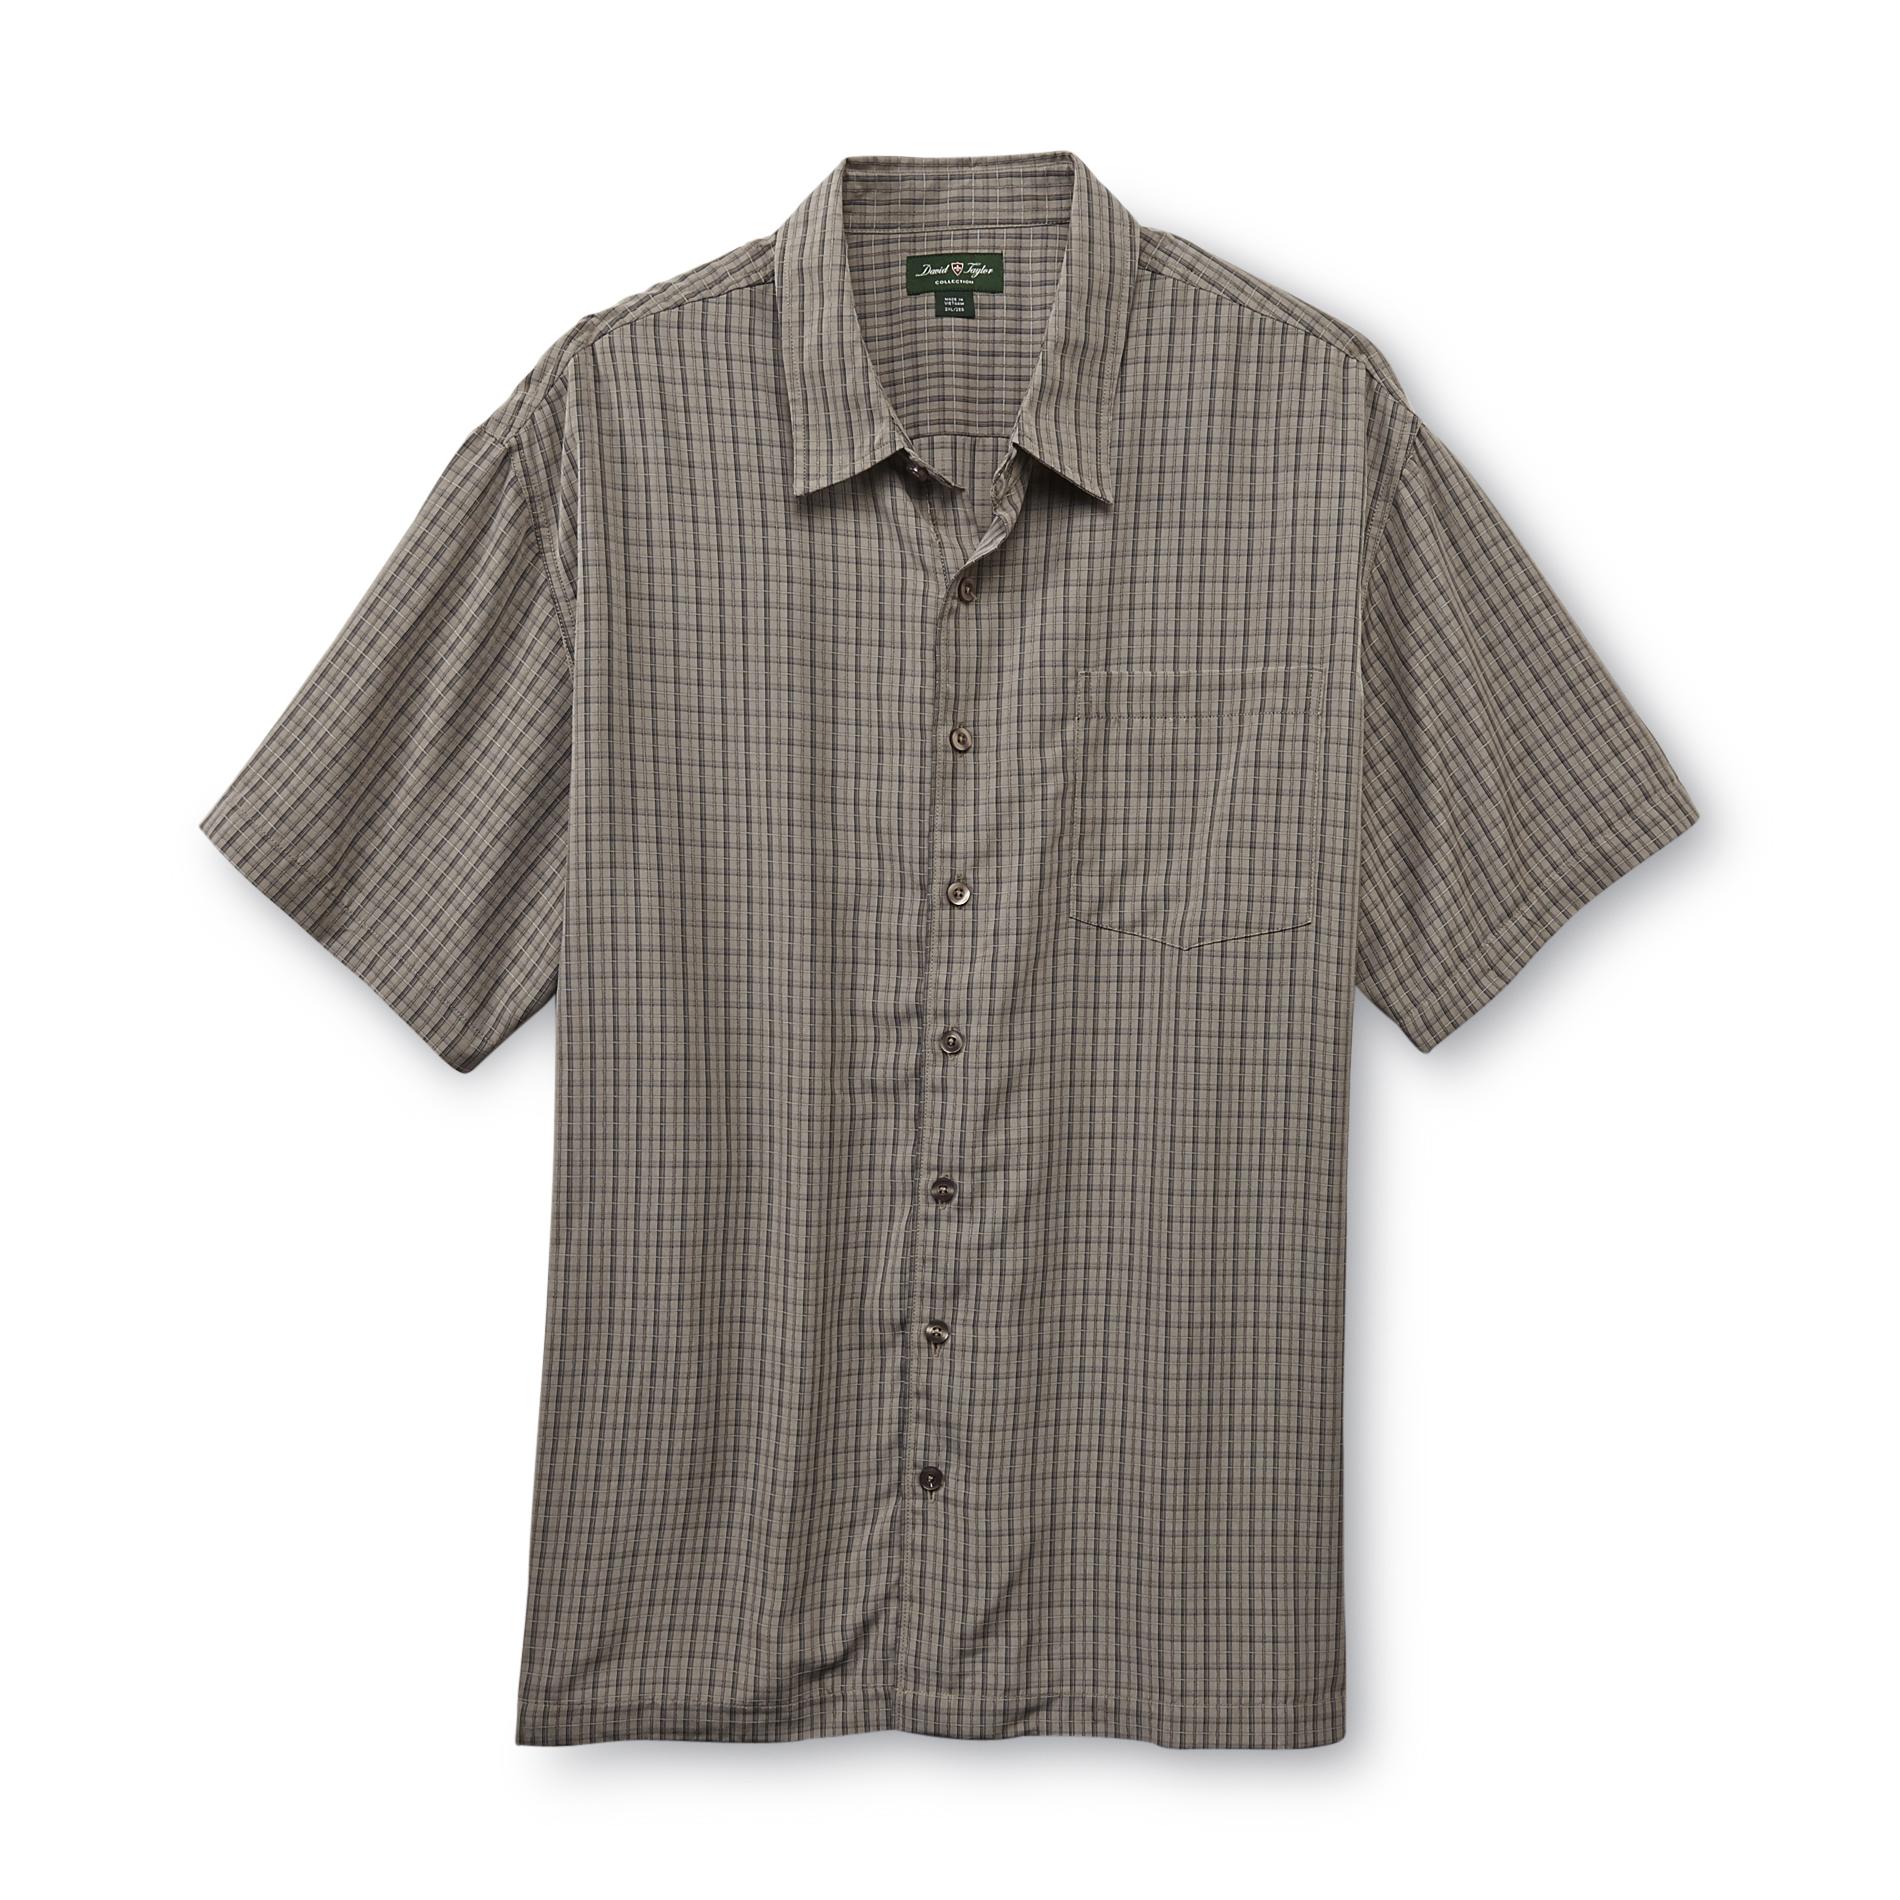 David Taylor Collection Men's Big & Tall Short-Sleeve Shirt - Check